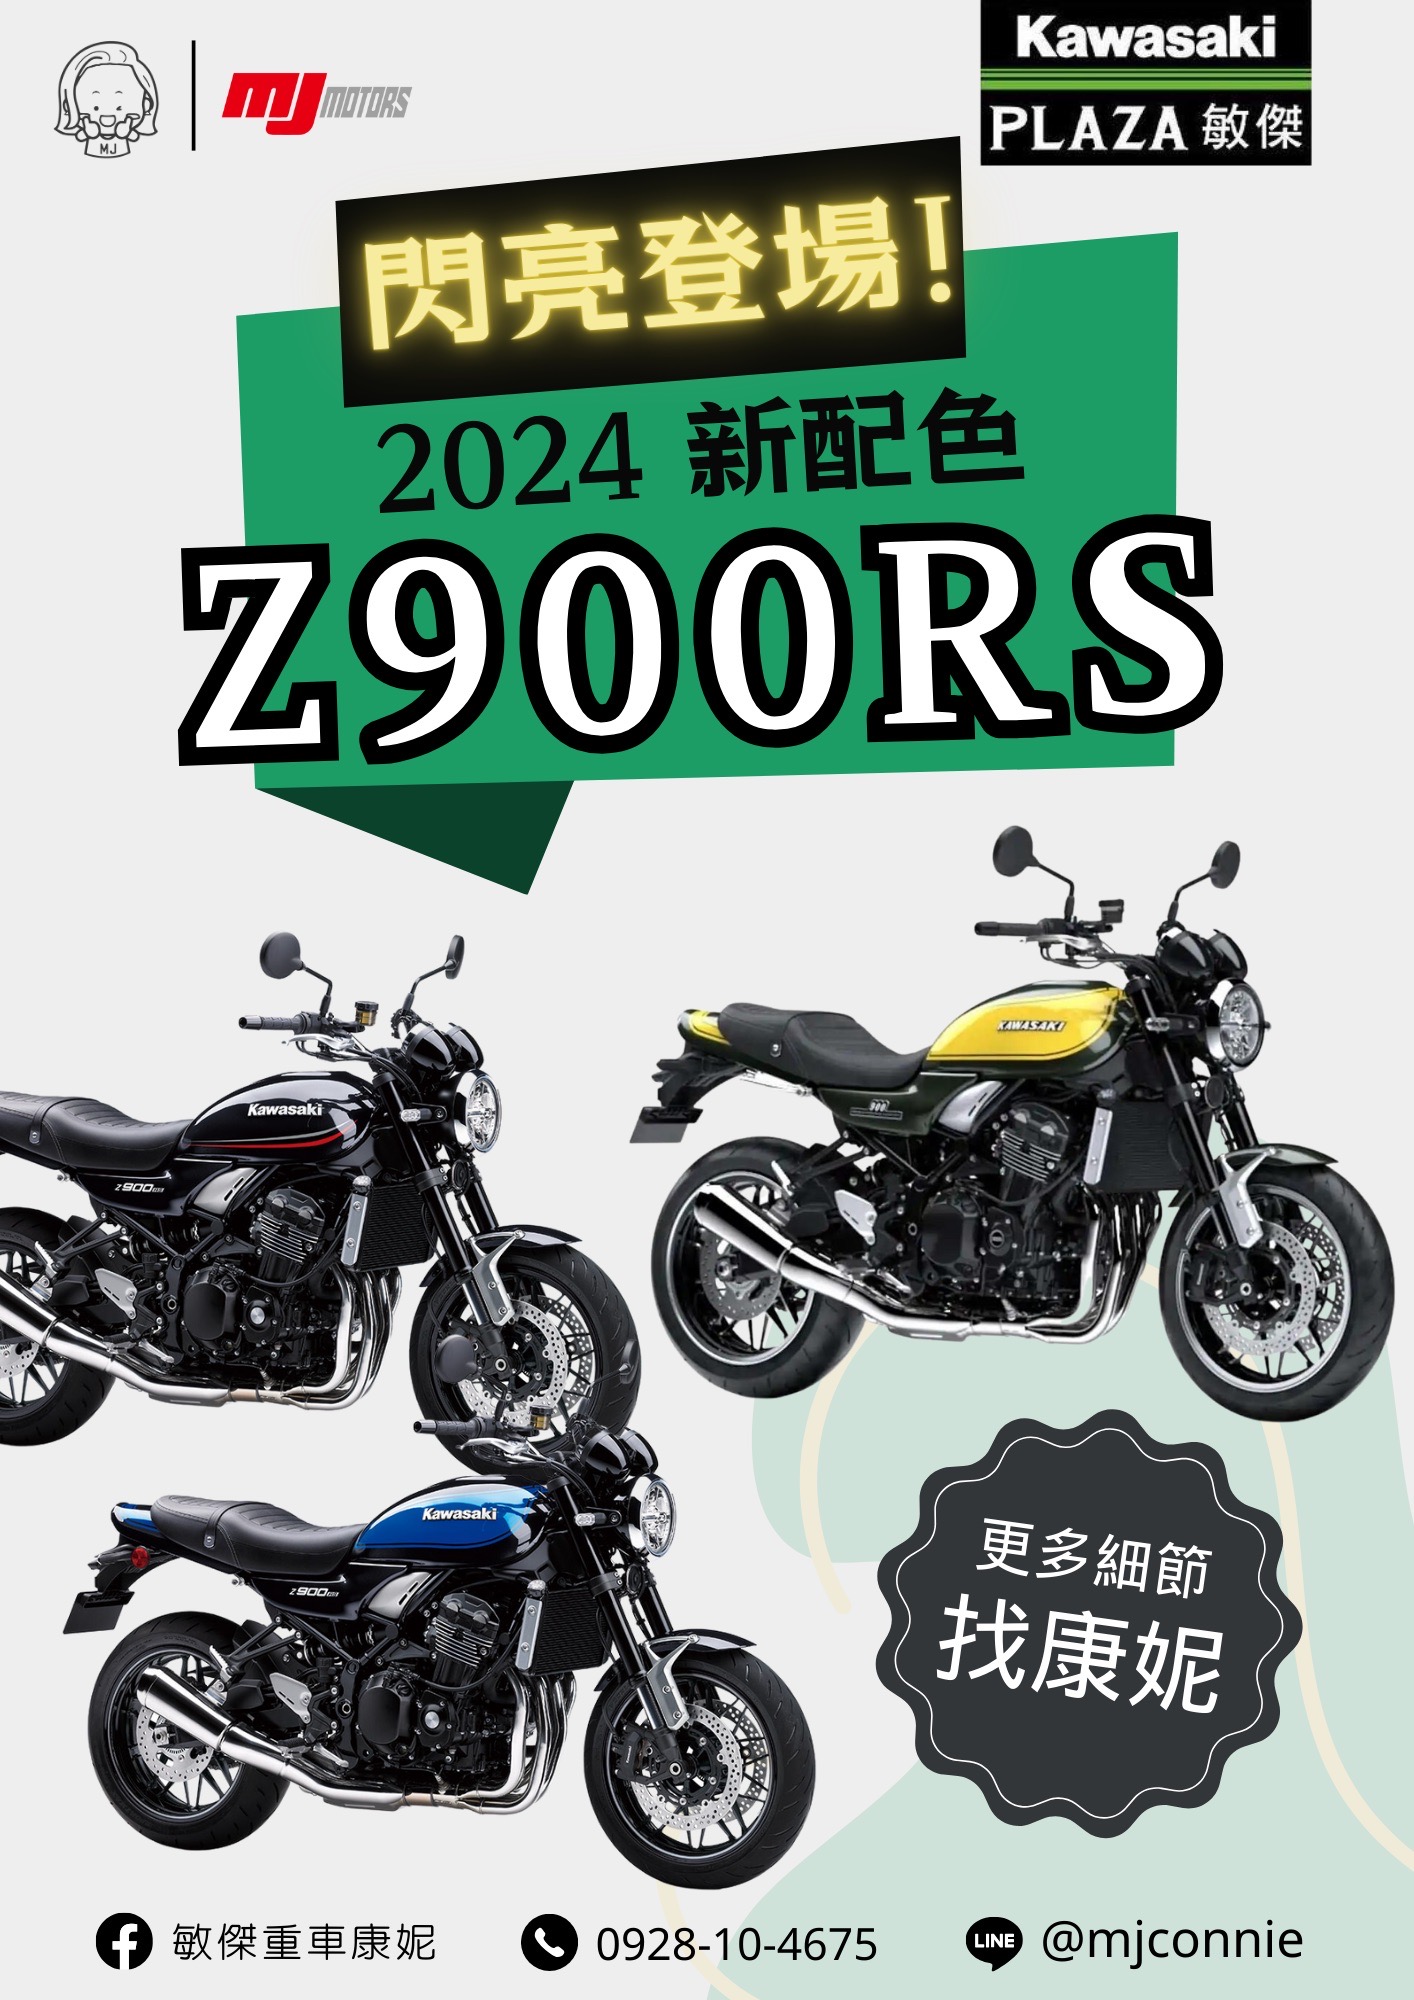 KAWASAKI Z900RS新車出售中 『敏傑康妮』2024 Kawasaki Z900RS 全新配色 正式到店!! 大家都在等的配色來了!!! 絕對要入手收藏 | 敏傑車業資深銷售專員 康妮 Connie